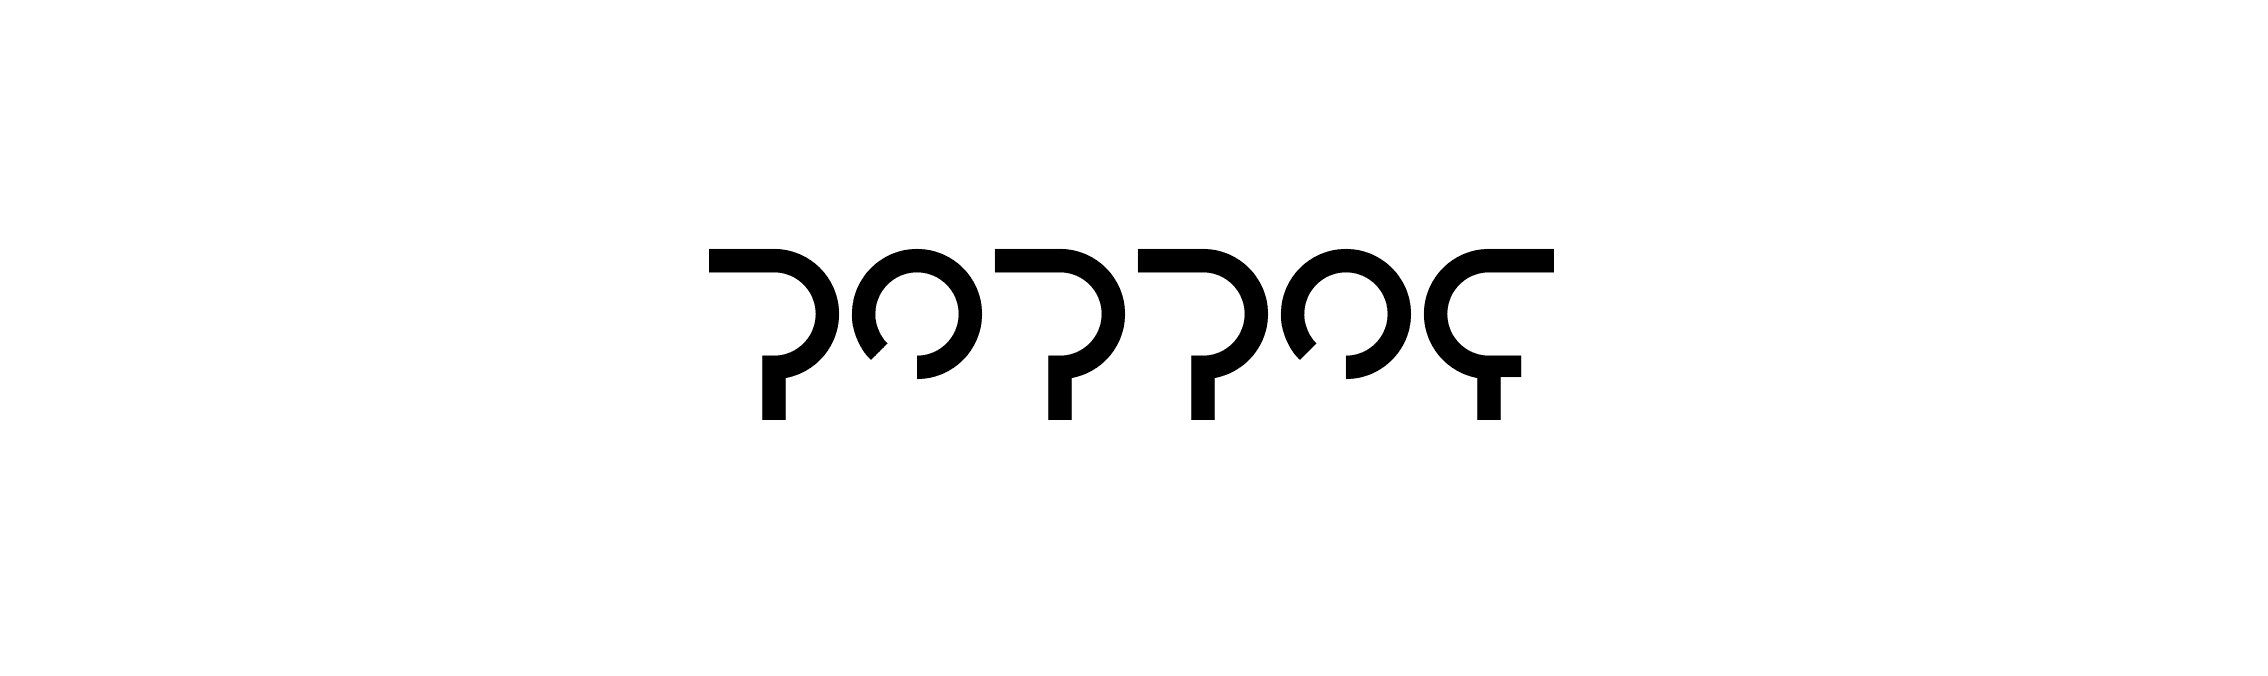 POPPOF banner